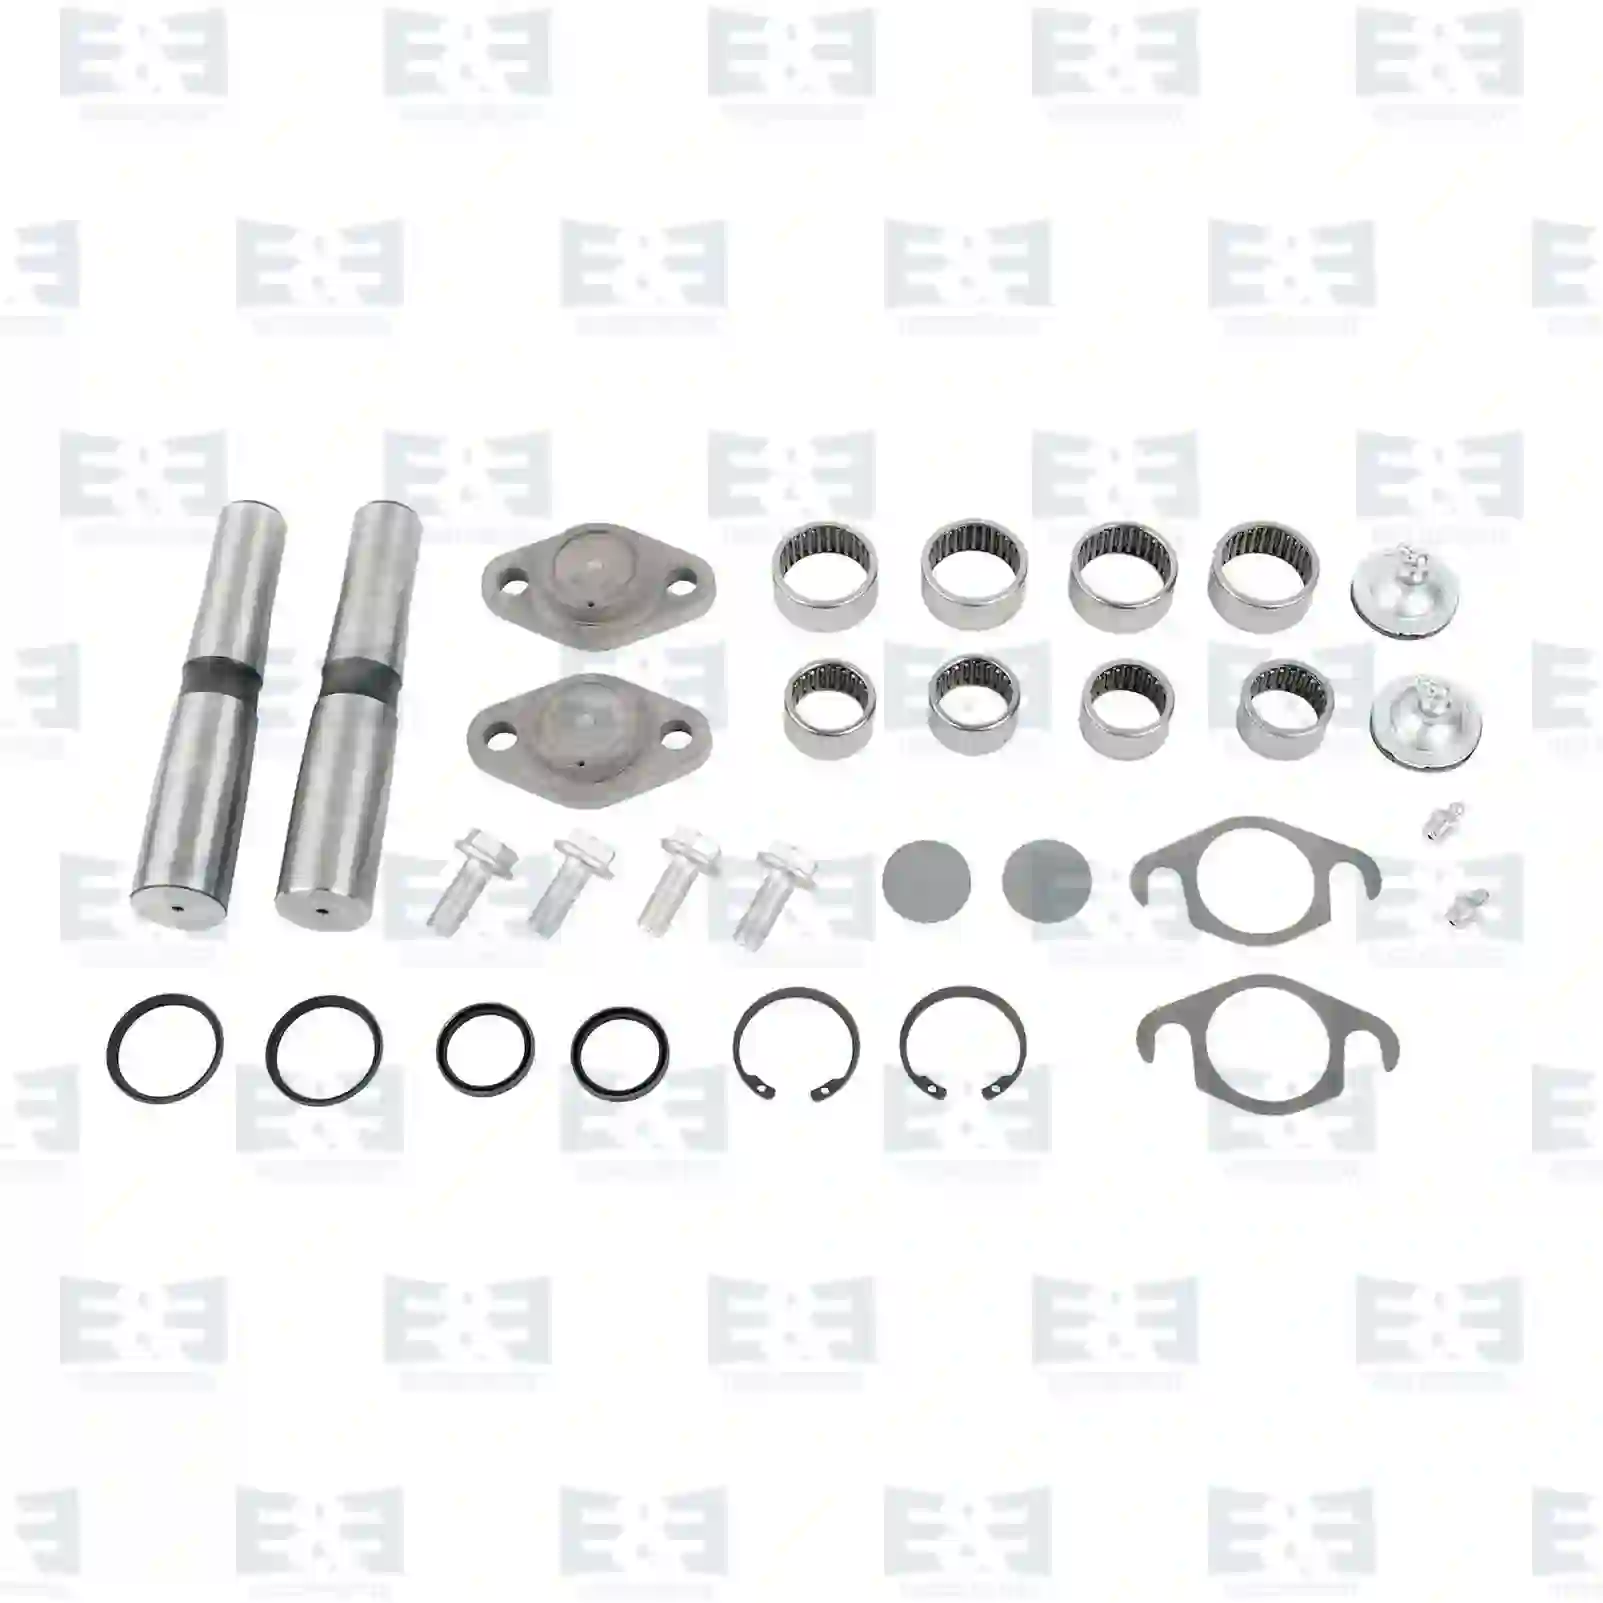  King pin kit, double kit || E&E Truck Spare Parts | Truck Spare Parts, Auotomotive Spare Parts